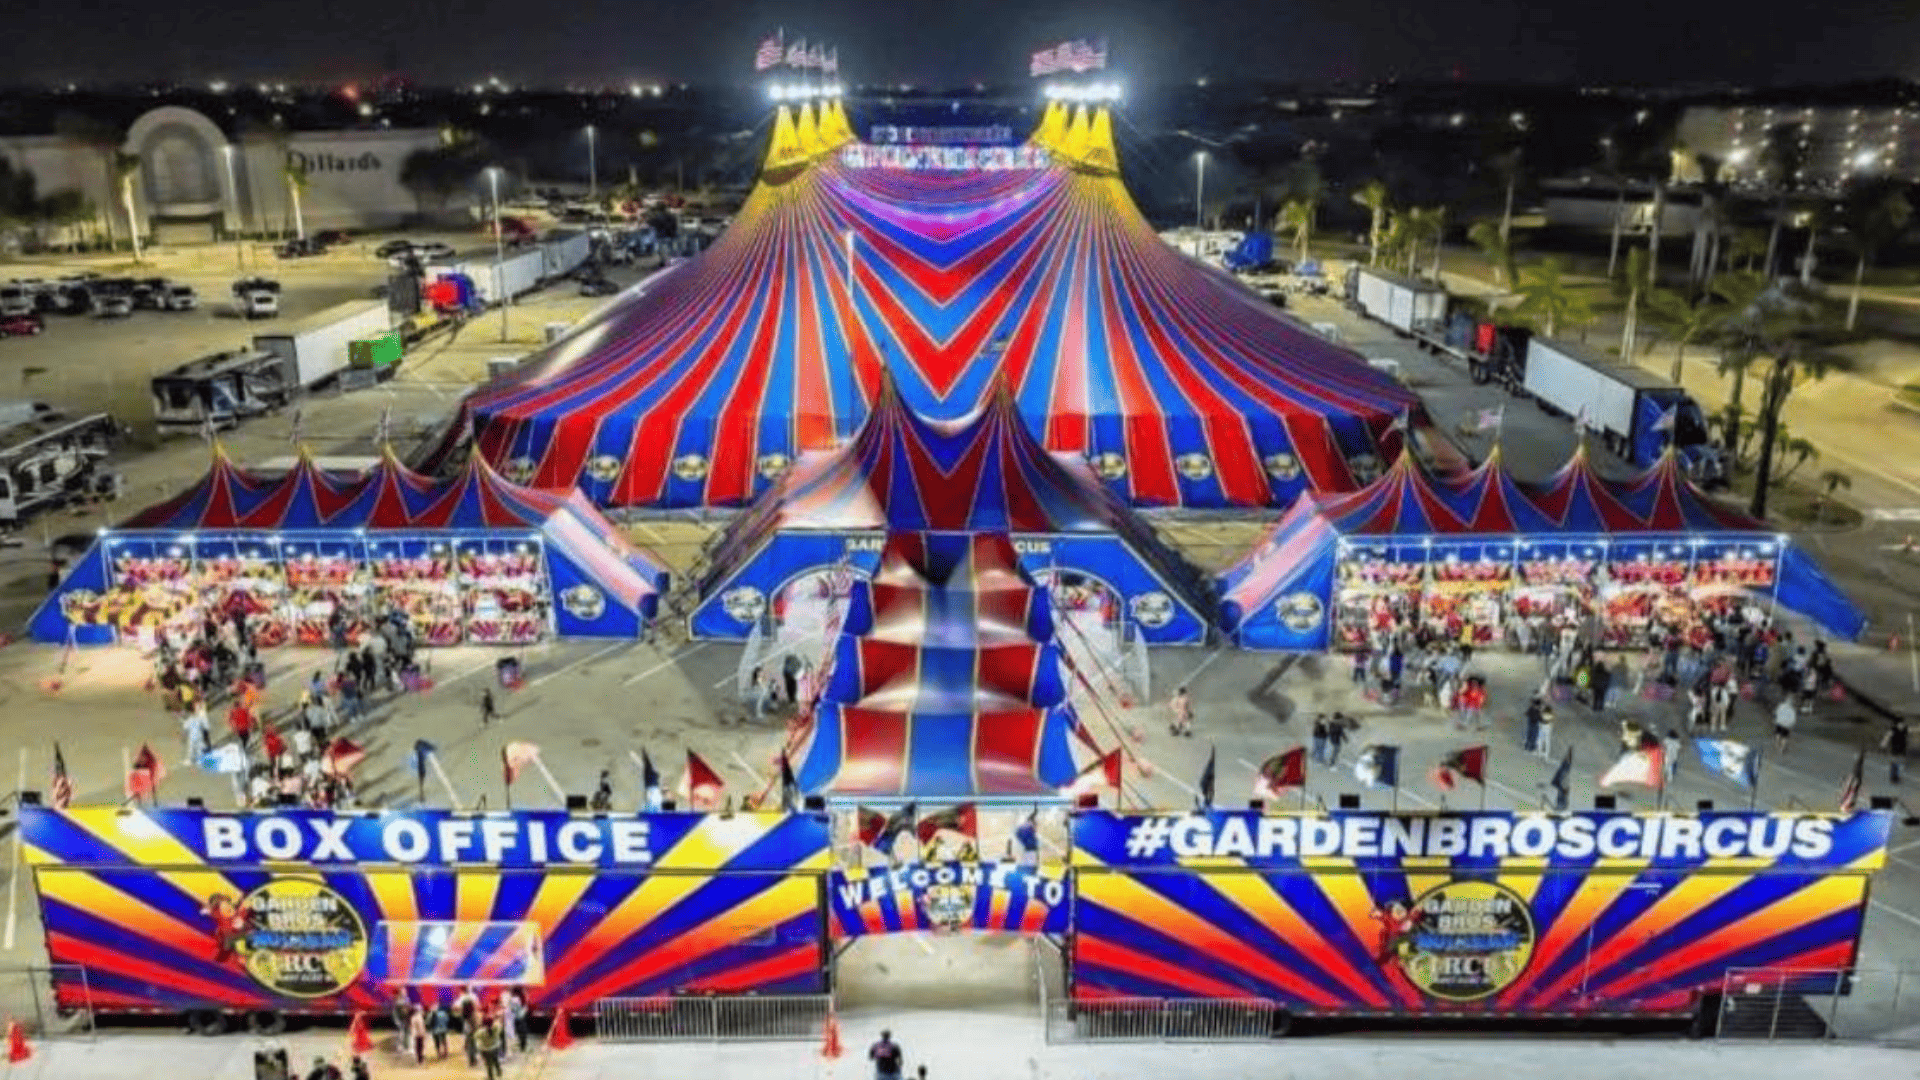 Parque cuna Jubox Circus